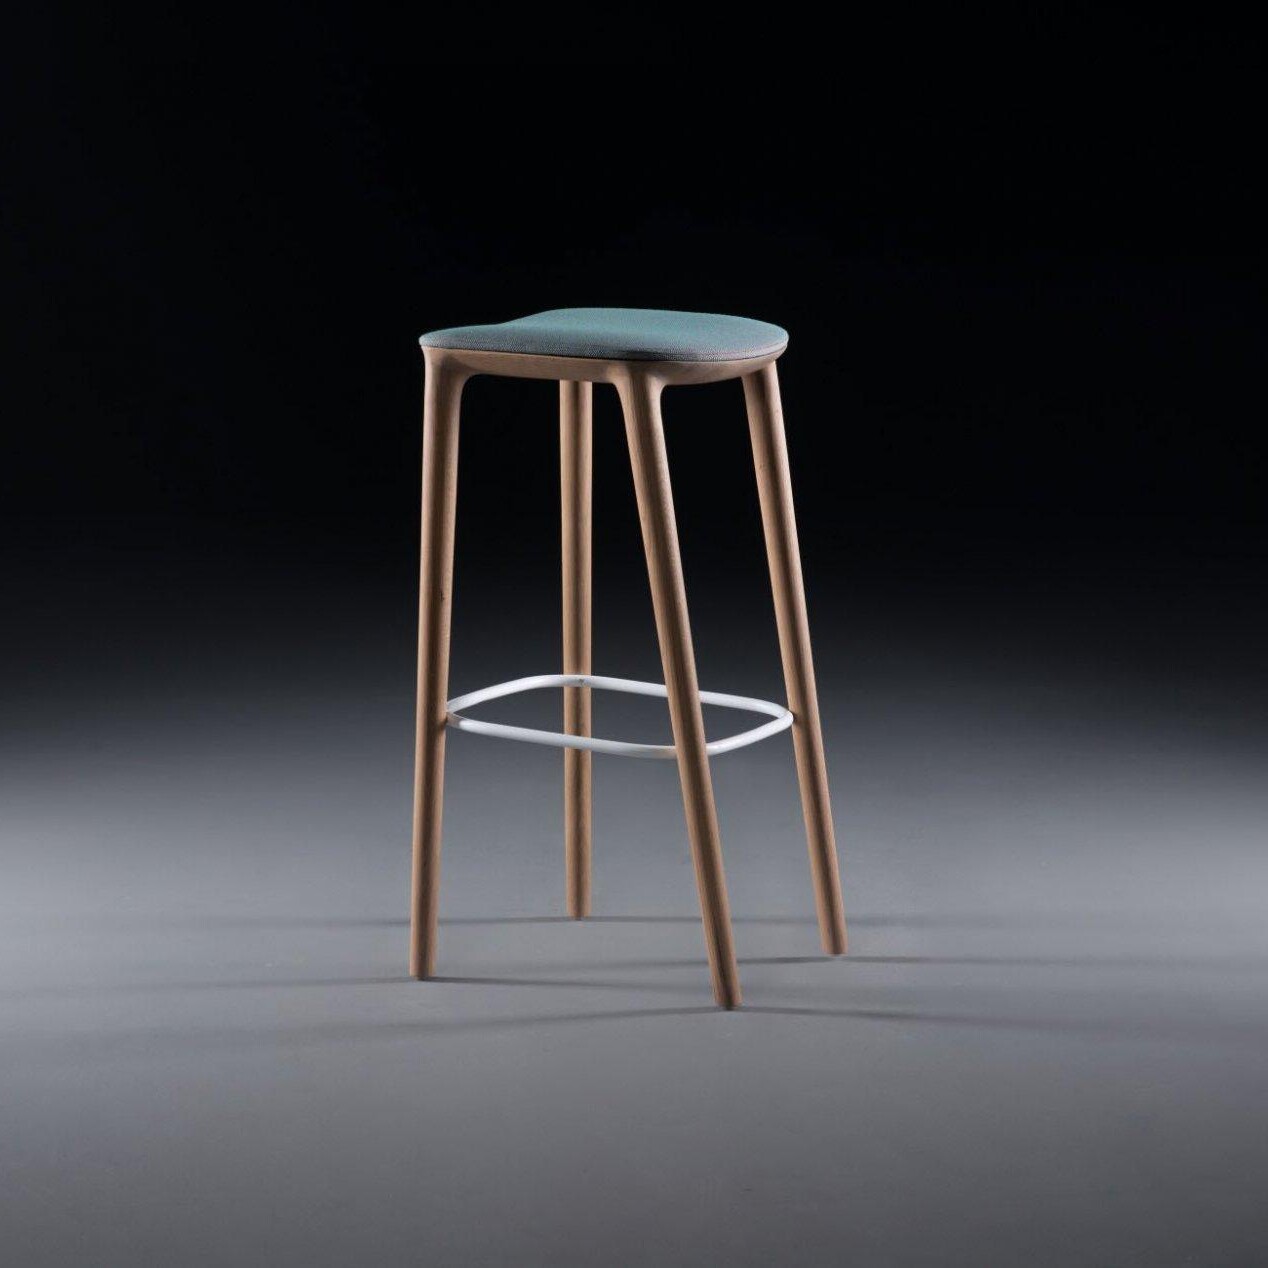 Hemelaer-Interior-Artisan-Neva-Barkruk-Barstoel-Barchair-Chair-00004